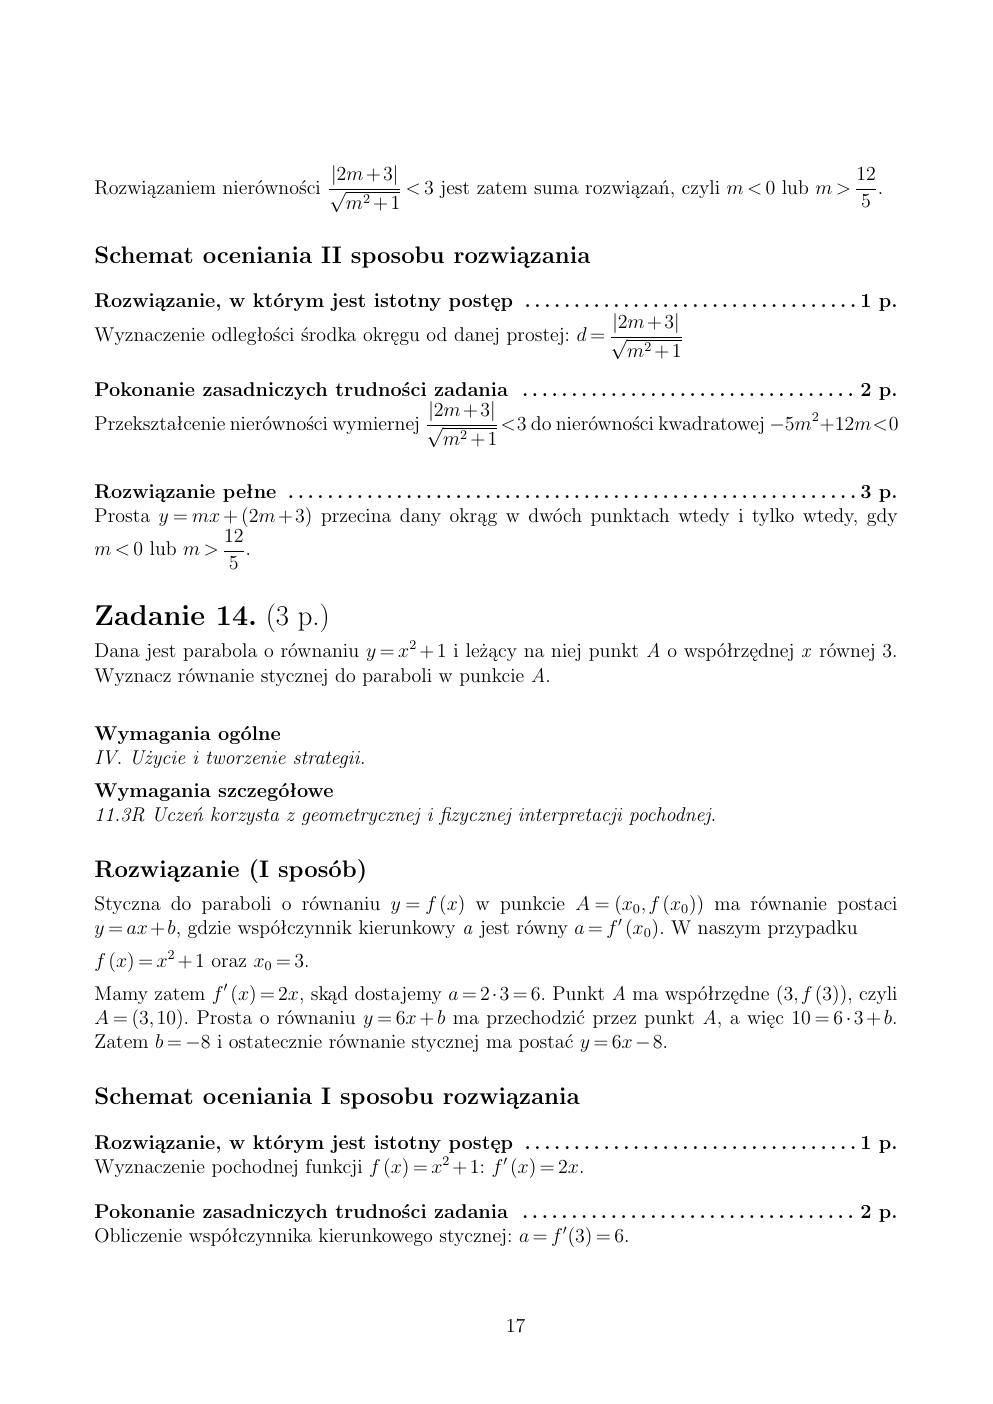 zasady oceniania - odpowiedzi - matematyka rozszerzony - matura 2015 przykładowa-17